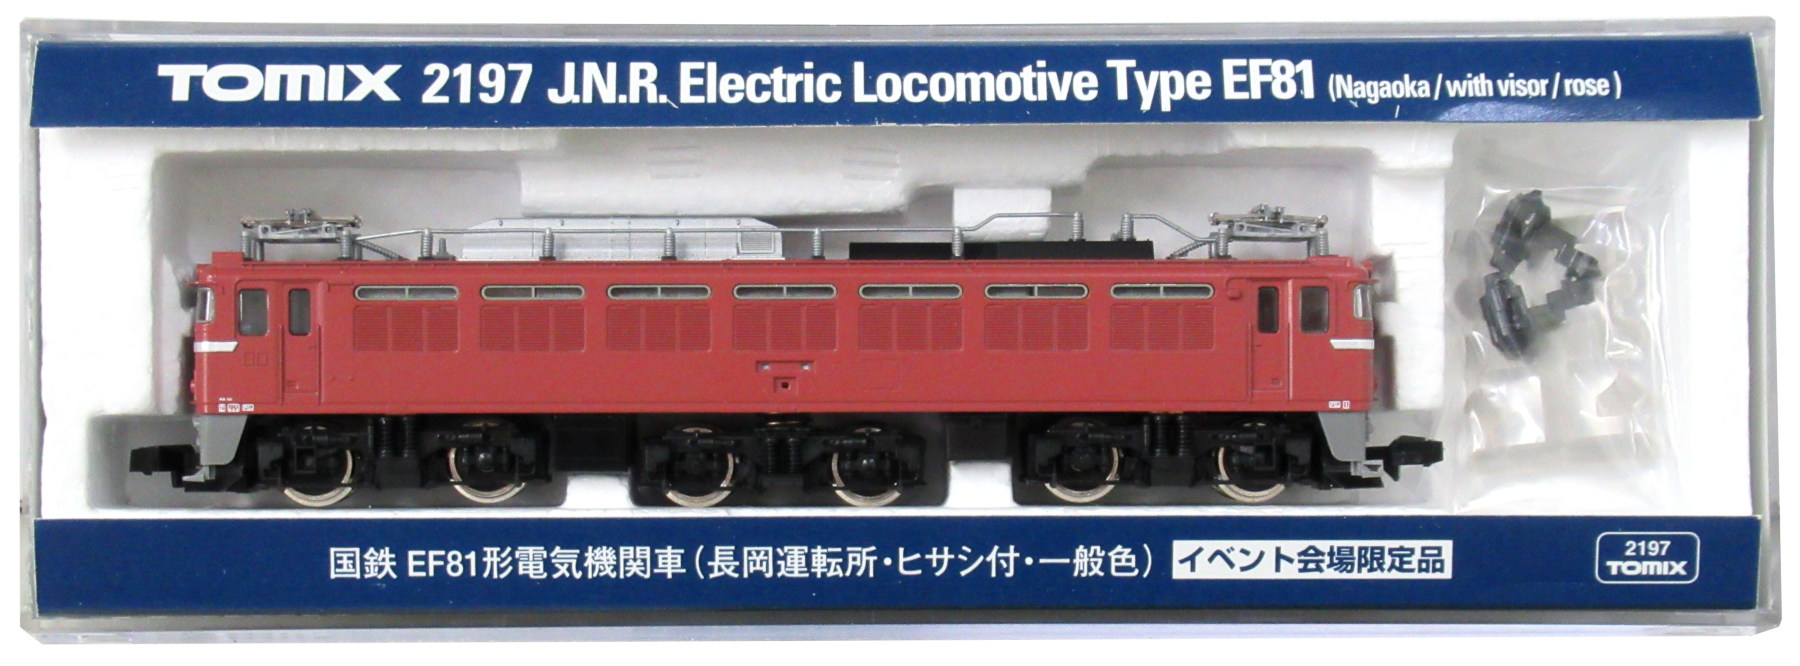 公式]鉄道模型(JR・国鉄 形式別(N)、電気機関車、EF81)カテゴリ 